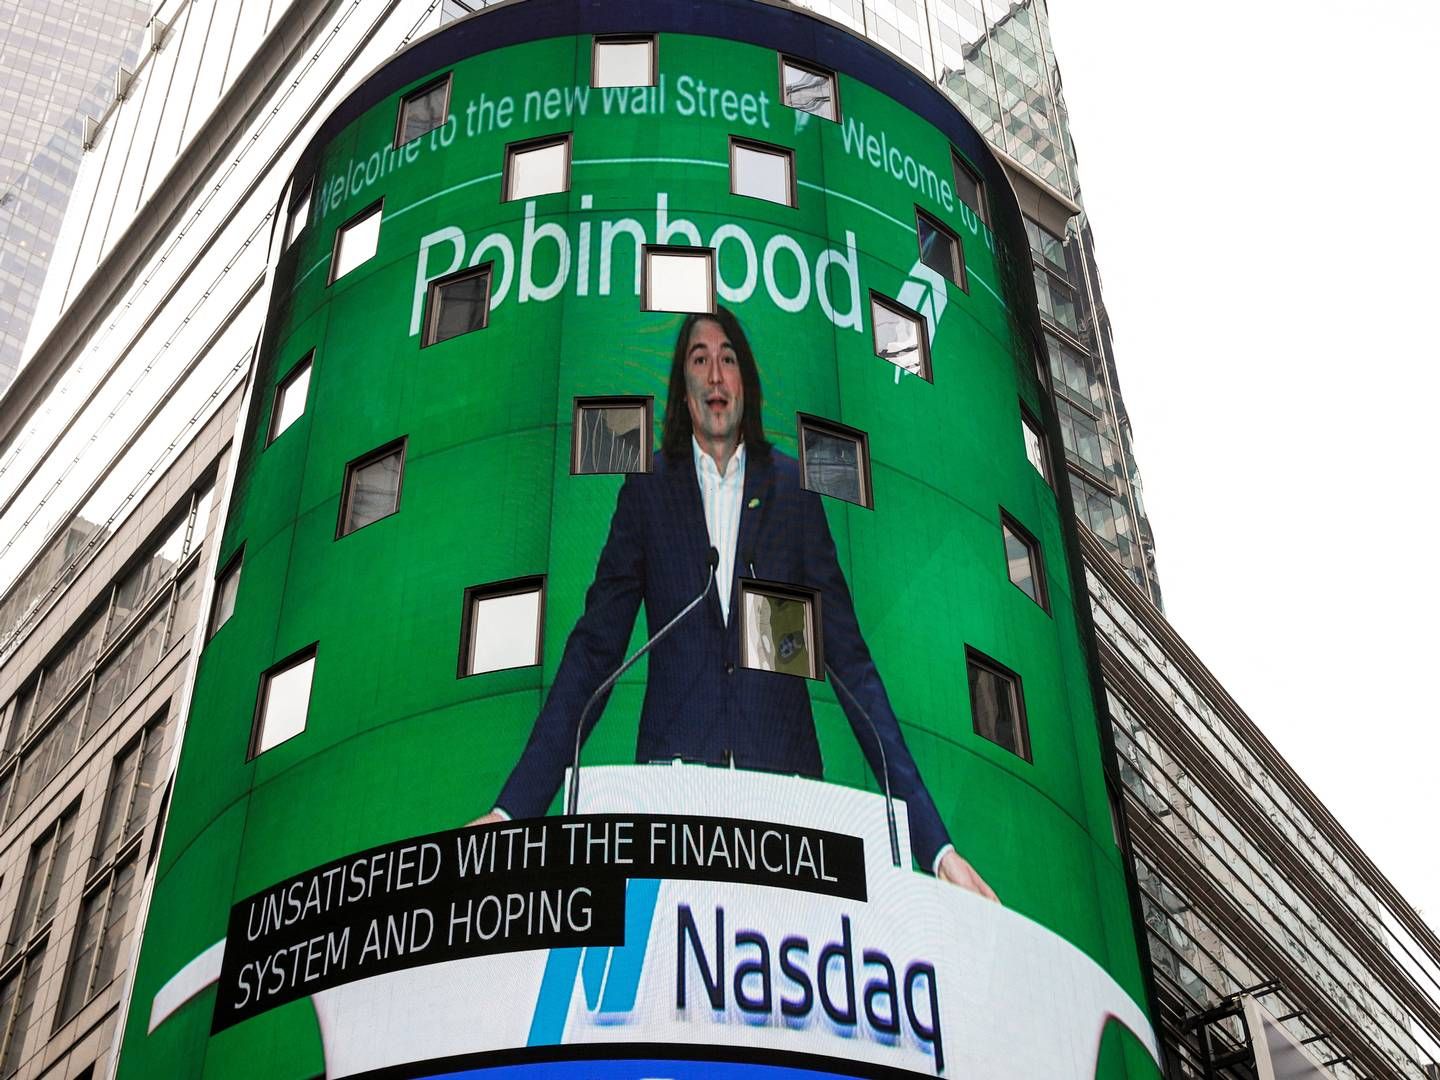 Handelsplatformen Robinhood er blevet kendt for at sælge mindre bidder af aktier henvendt til mindre, private investorer. | Foto: REUTERS/Brendan McDermid/File Photo